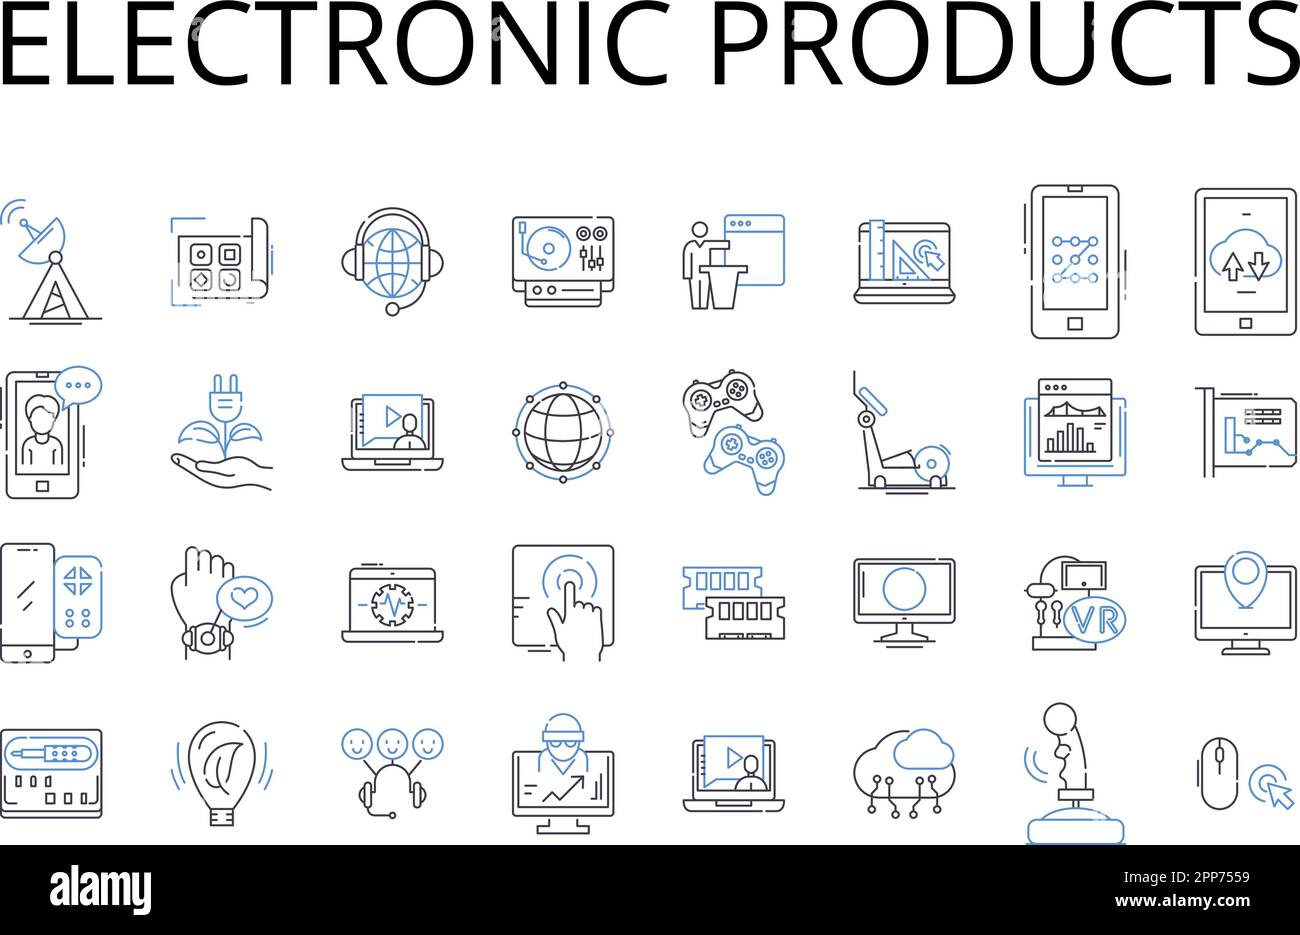 Symbolsammlung für elektronische Produkte. Digitale Geräte, technische Artikel, Elektrogeräte, Cyber-Produkte, Hightech-Gadgets, Audioanlage Stock Vektor